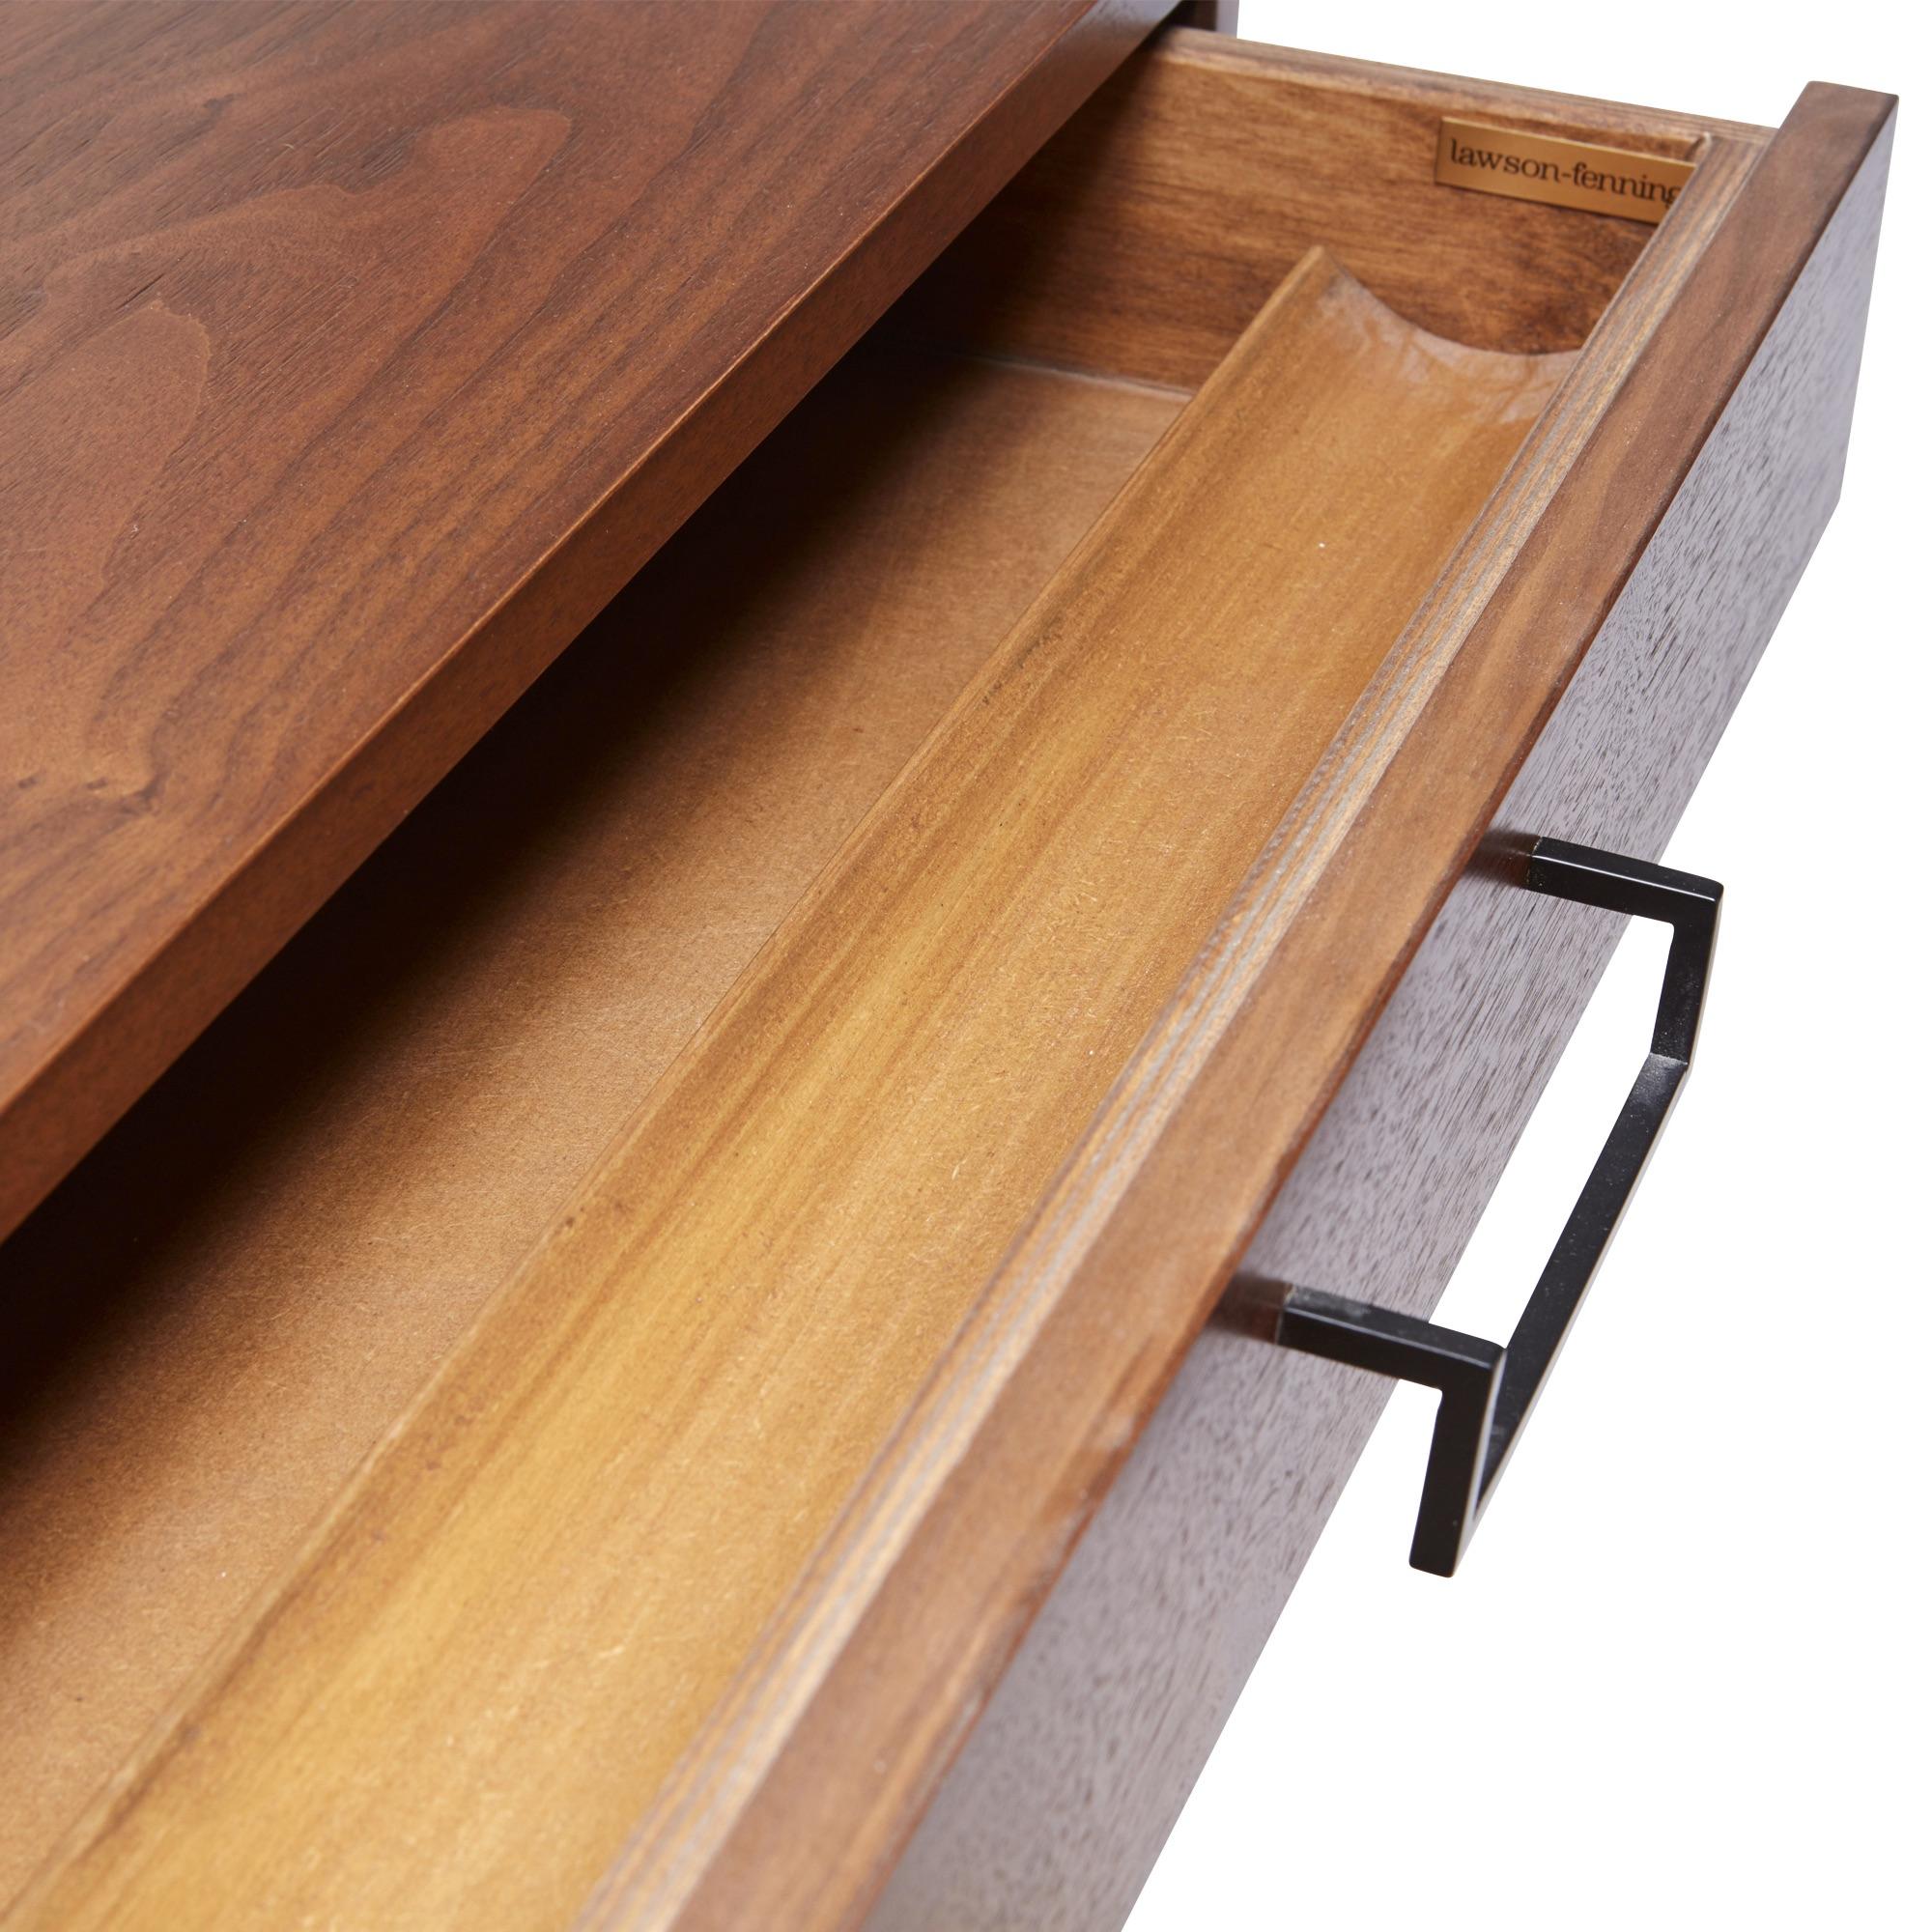 American Walnut Thin Frame Desk by Lawson-Fenning